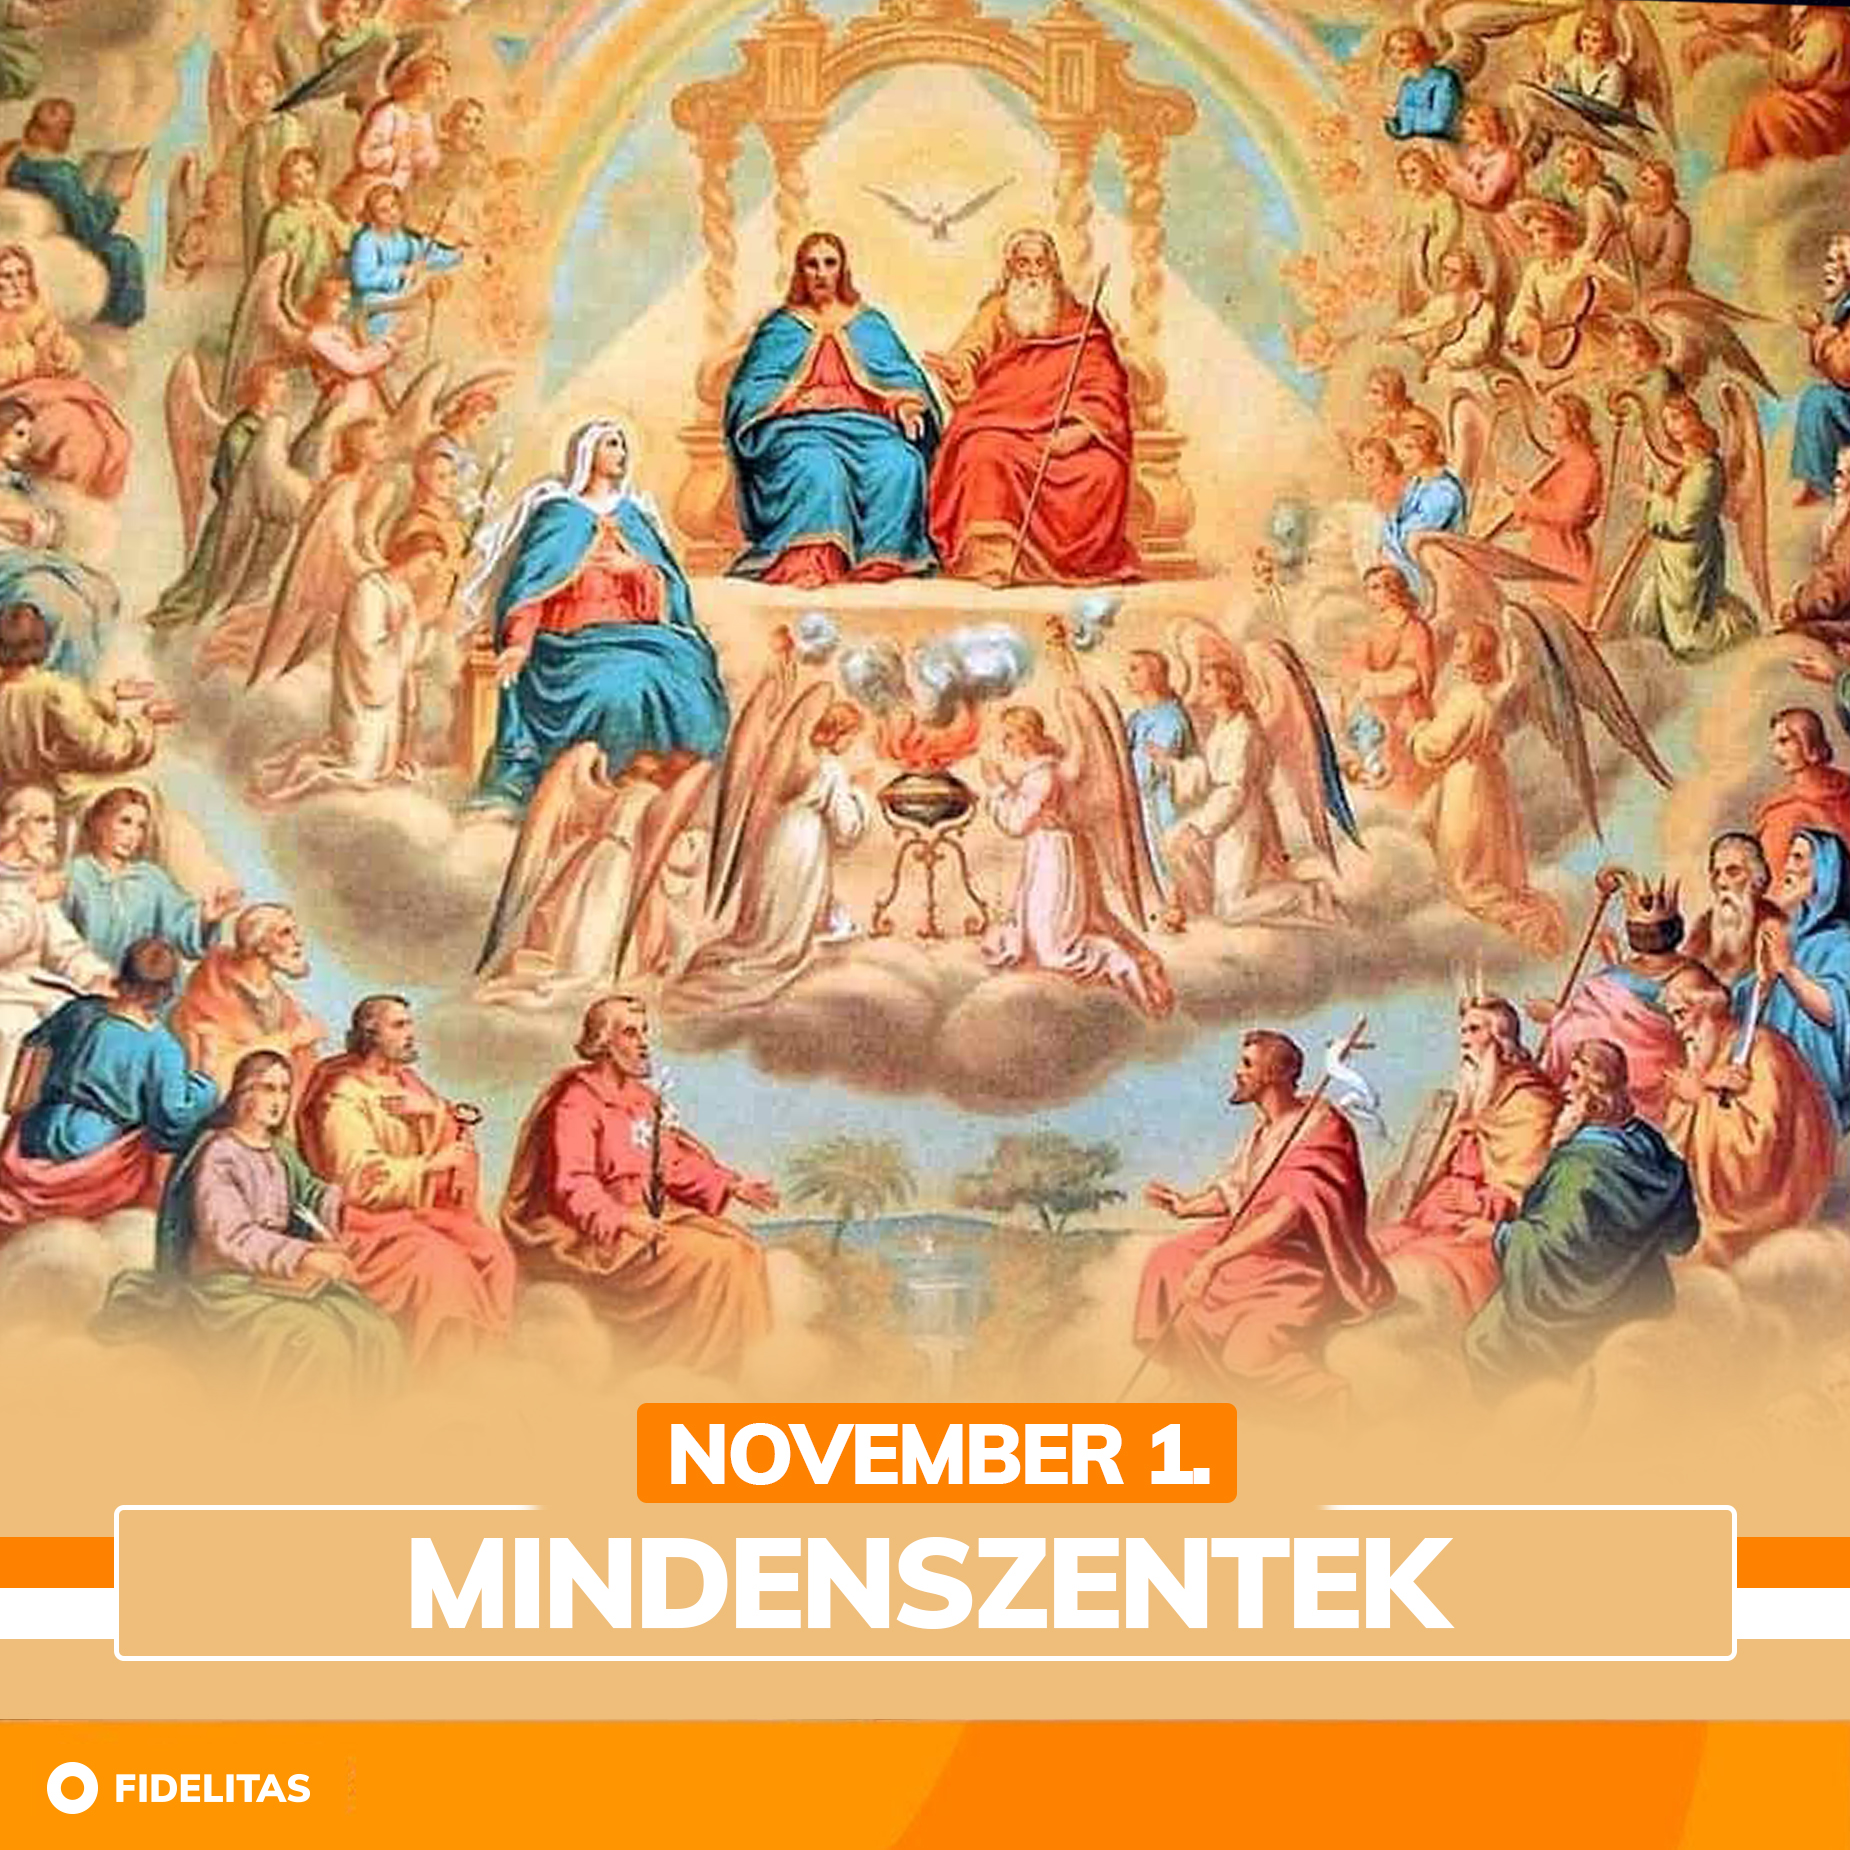 November 1. – Mindenszentek – Az üdvözült lelkek emléknapja.